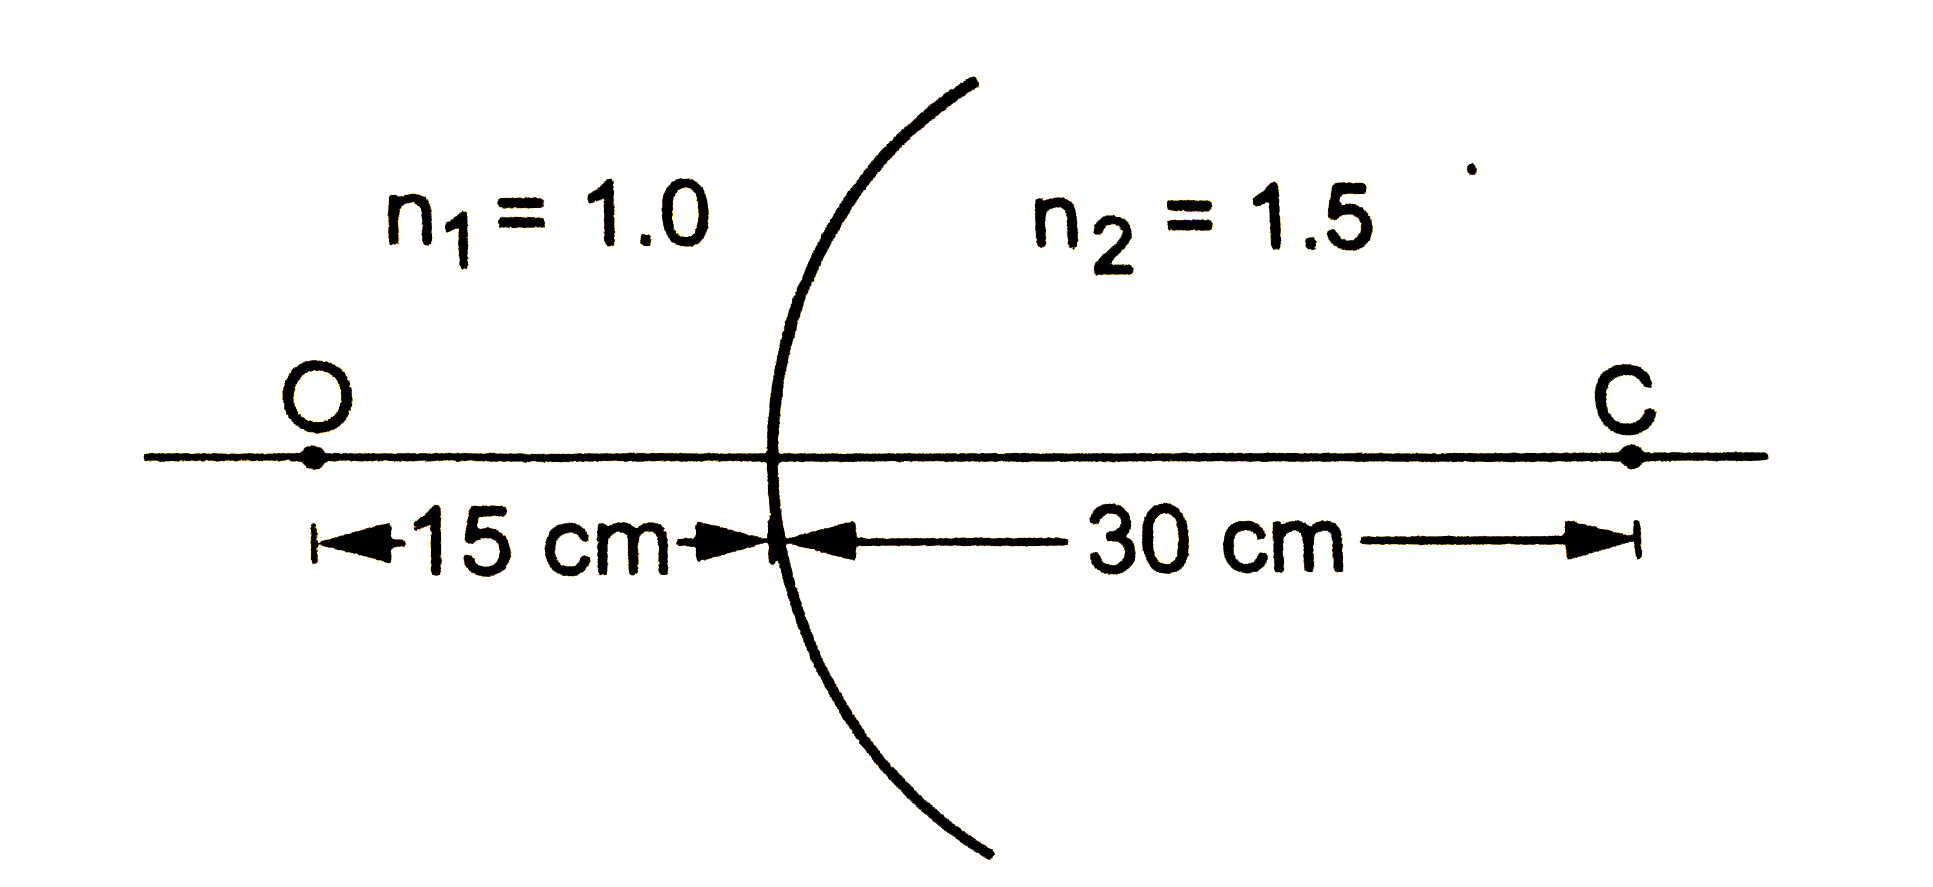 चित्र में दिखाई गई परिस्थिति में वस्तु O के प्रतिबिंब का स्थान निर्धारित करें । बिंदु C दोनों माध्यमों की उभयनिष्ठ (COMMON)  गोलीय सतह का वक्रता - केंद्र हैं ।